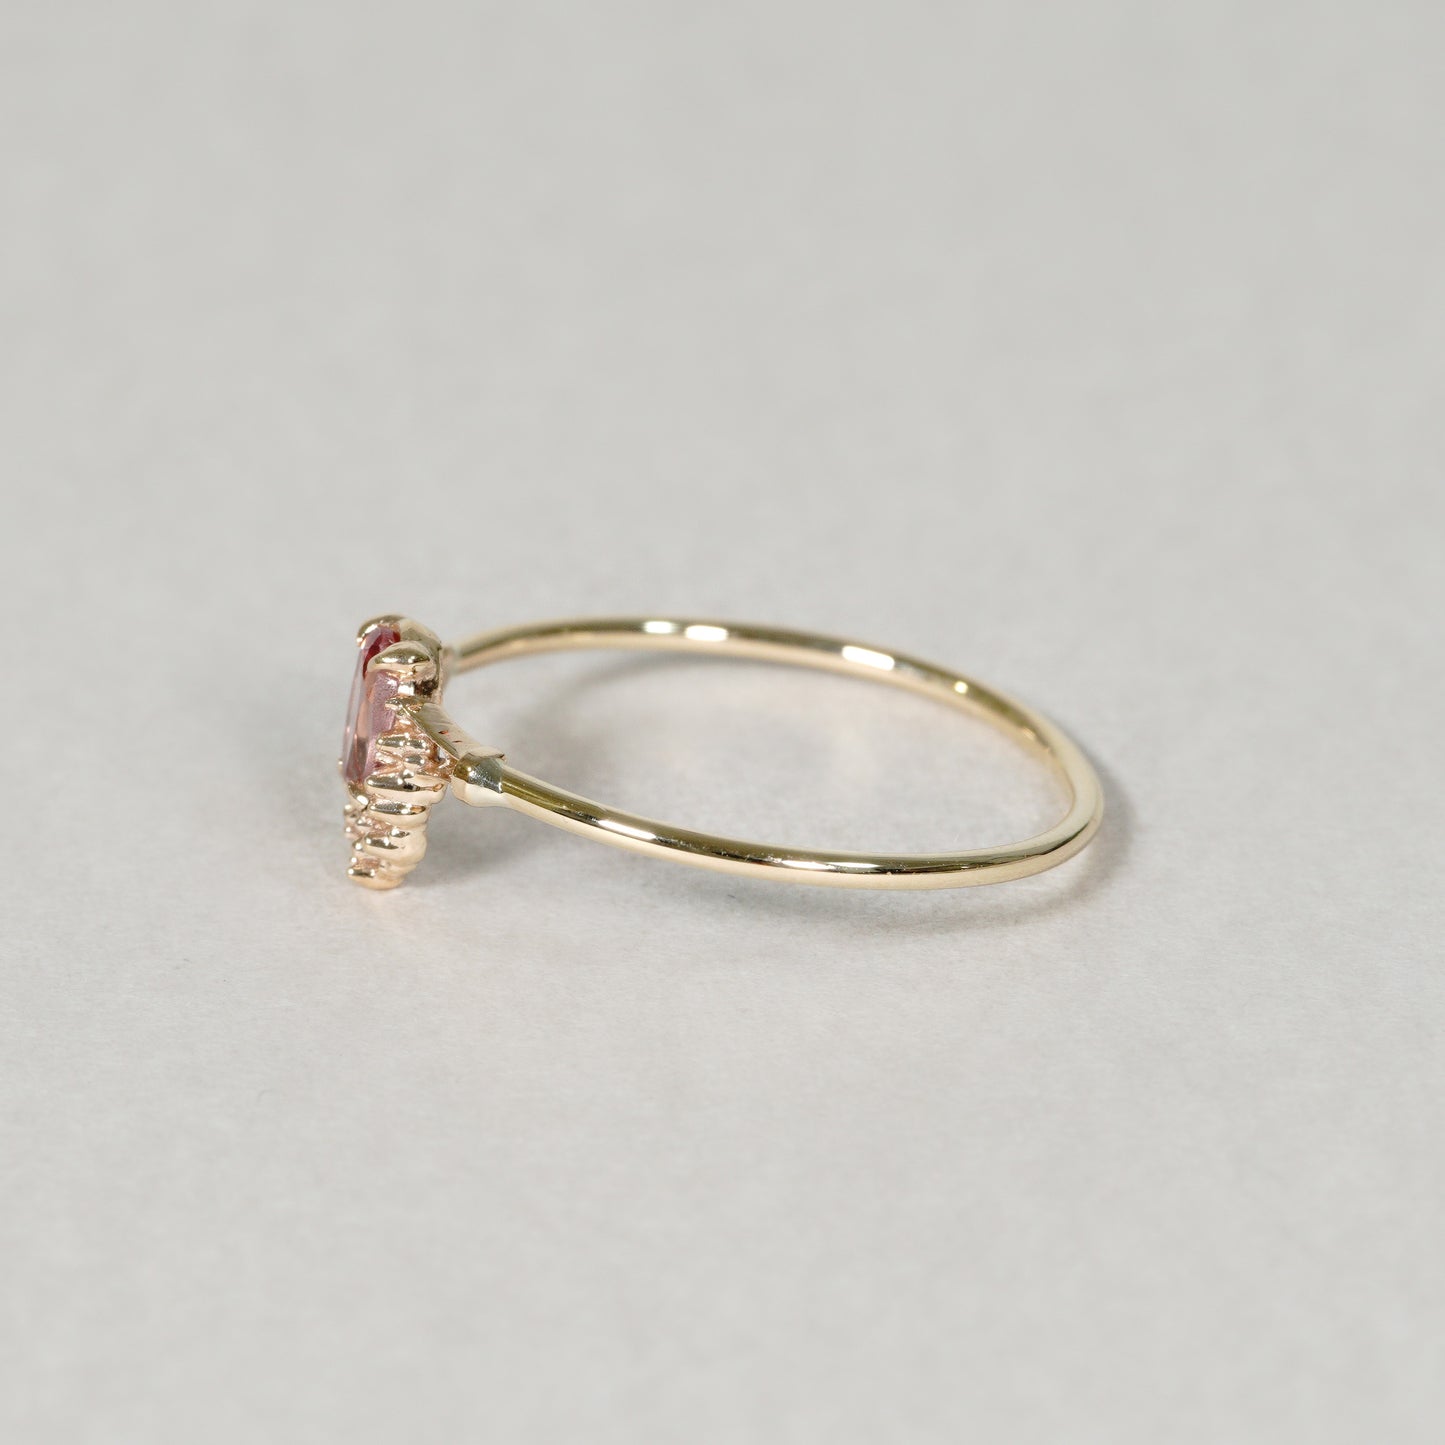 1376 Malaya Garnet Ring